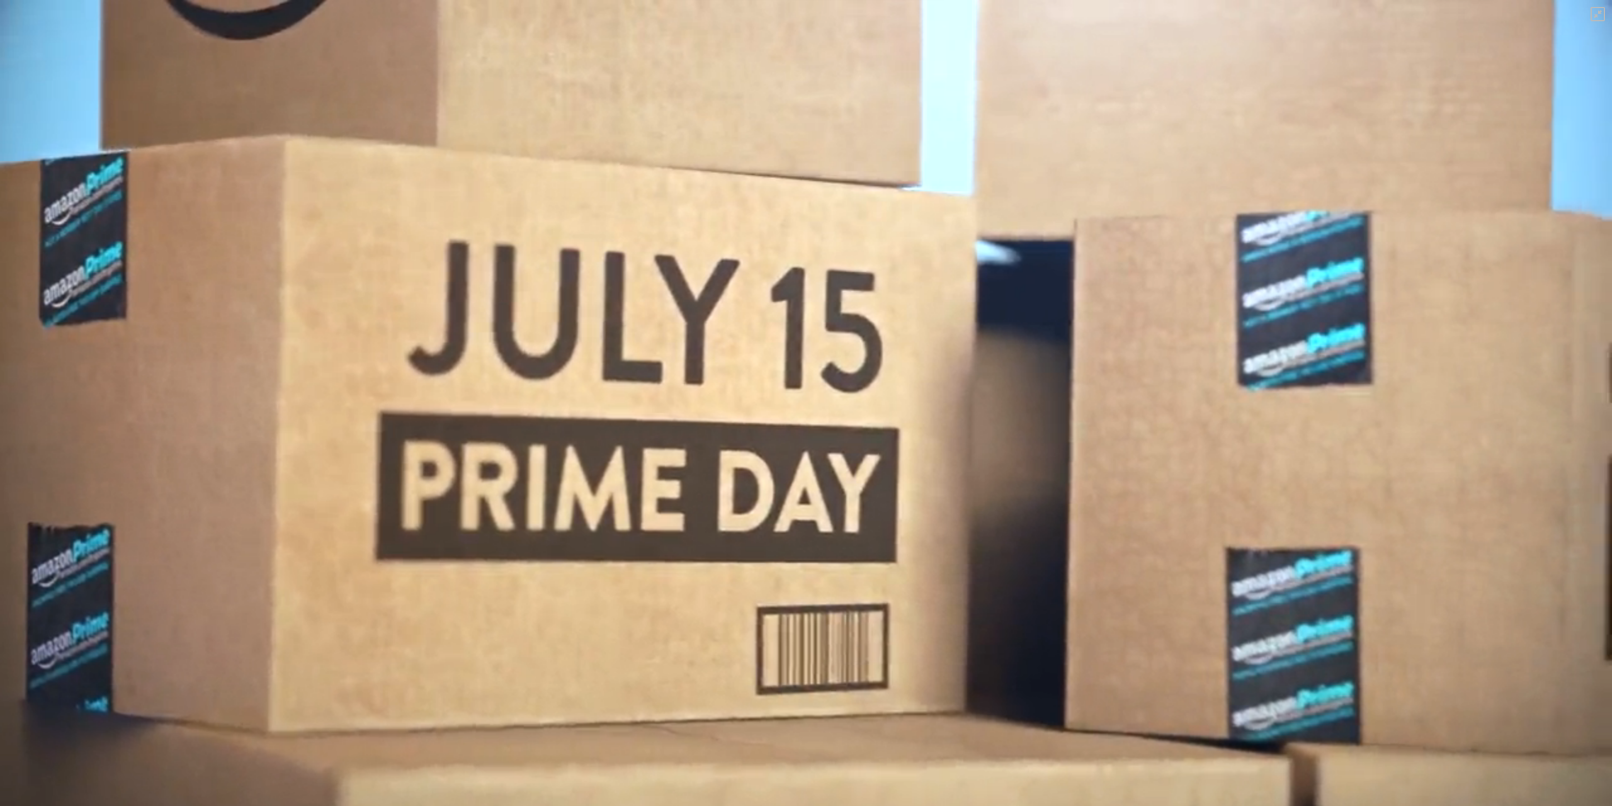 PrimeDay_Amazon